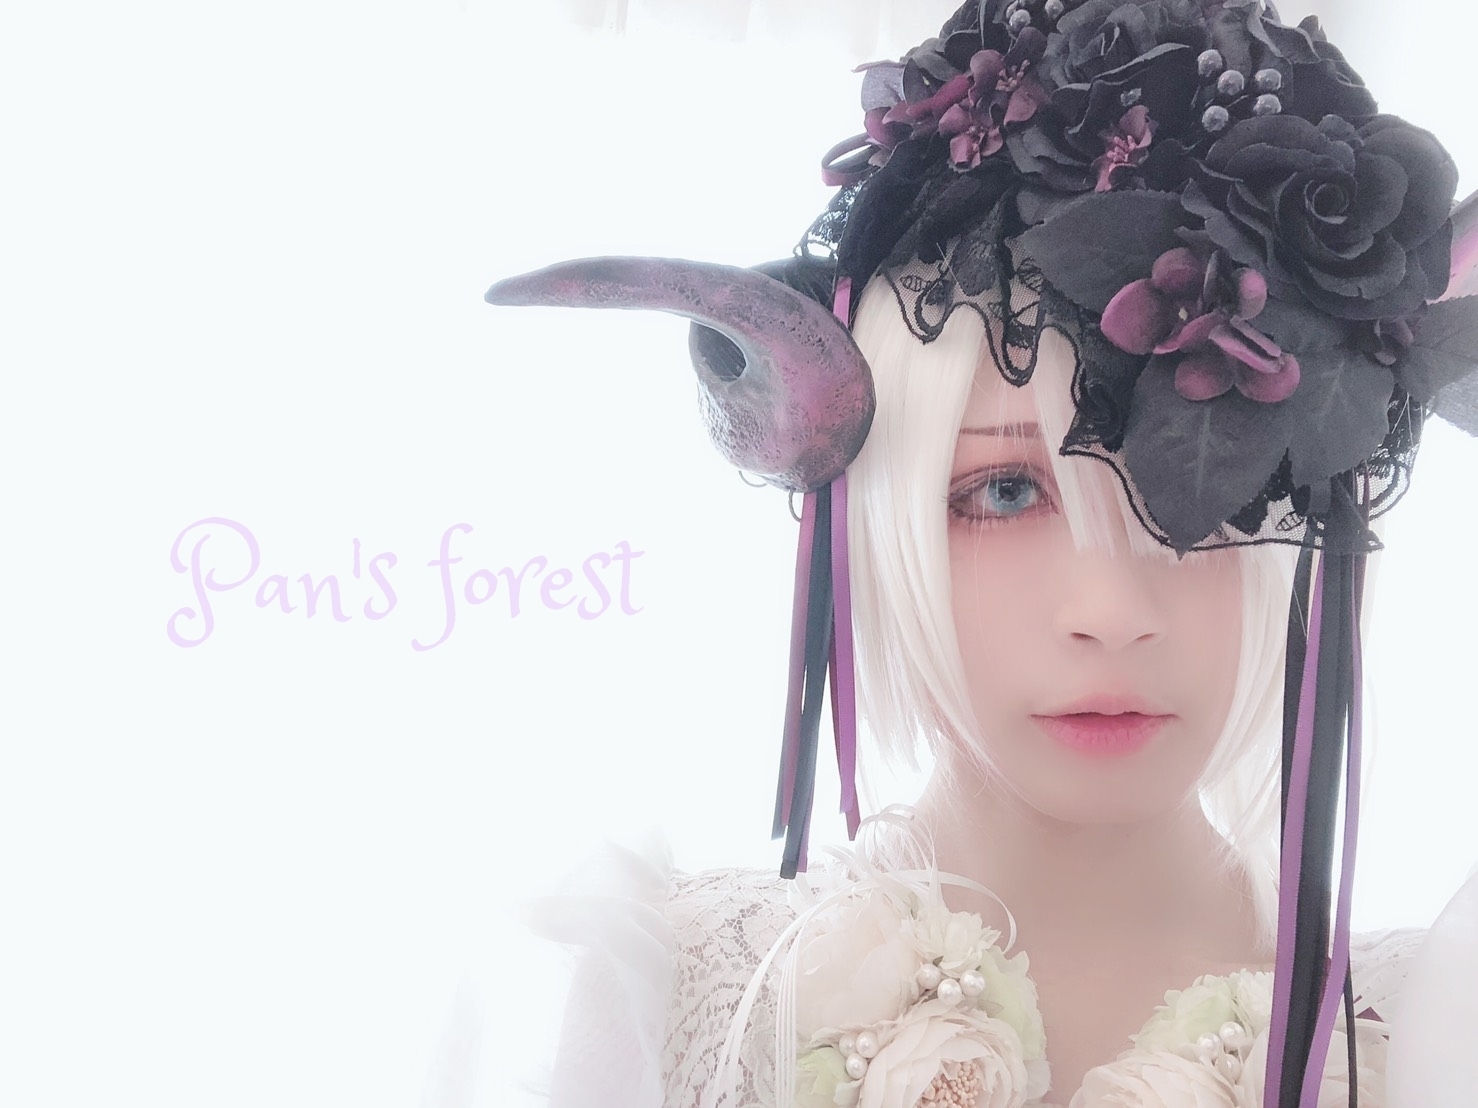 仮装造形 Pan's forest